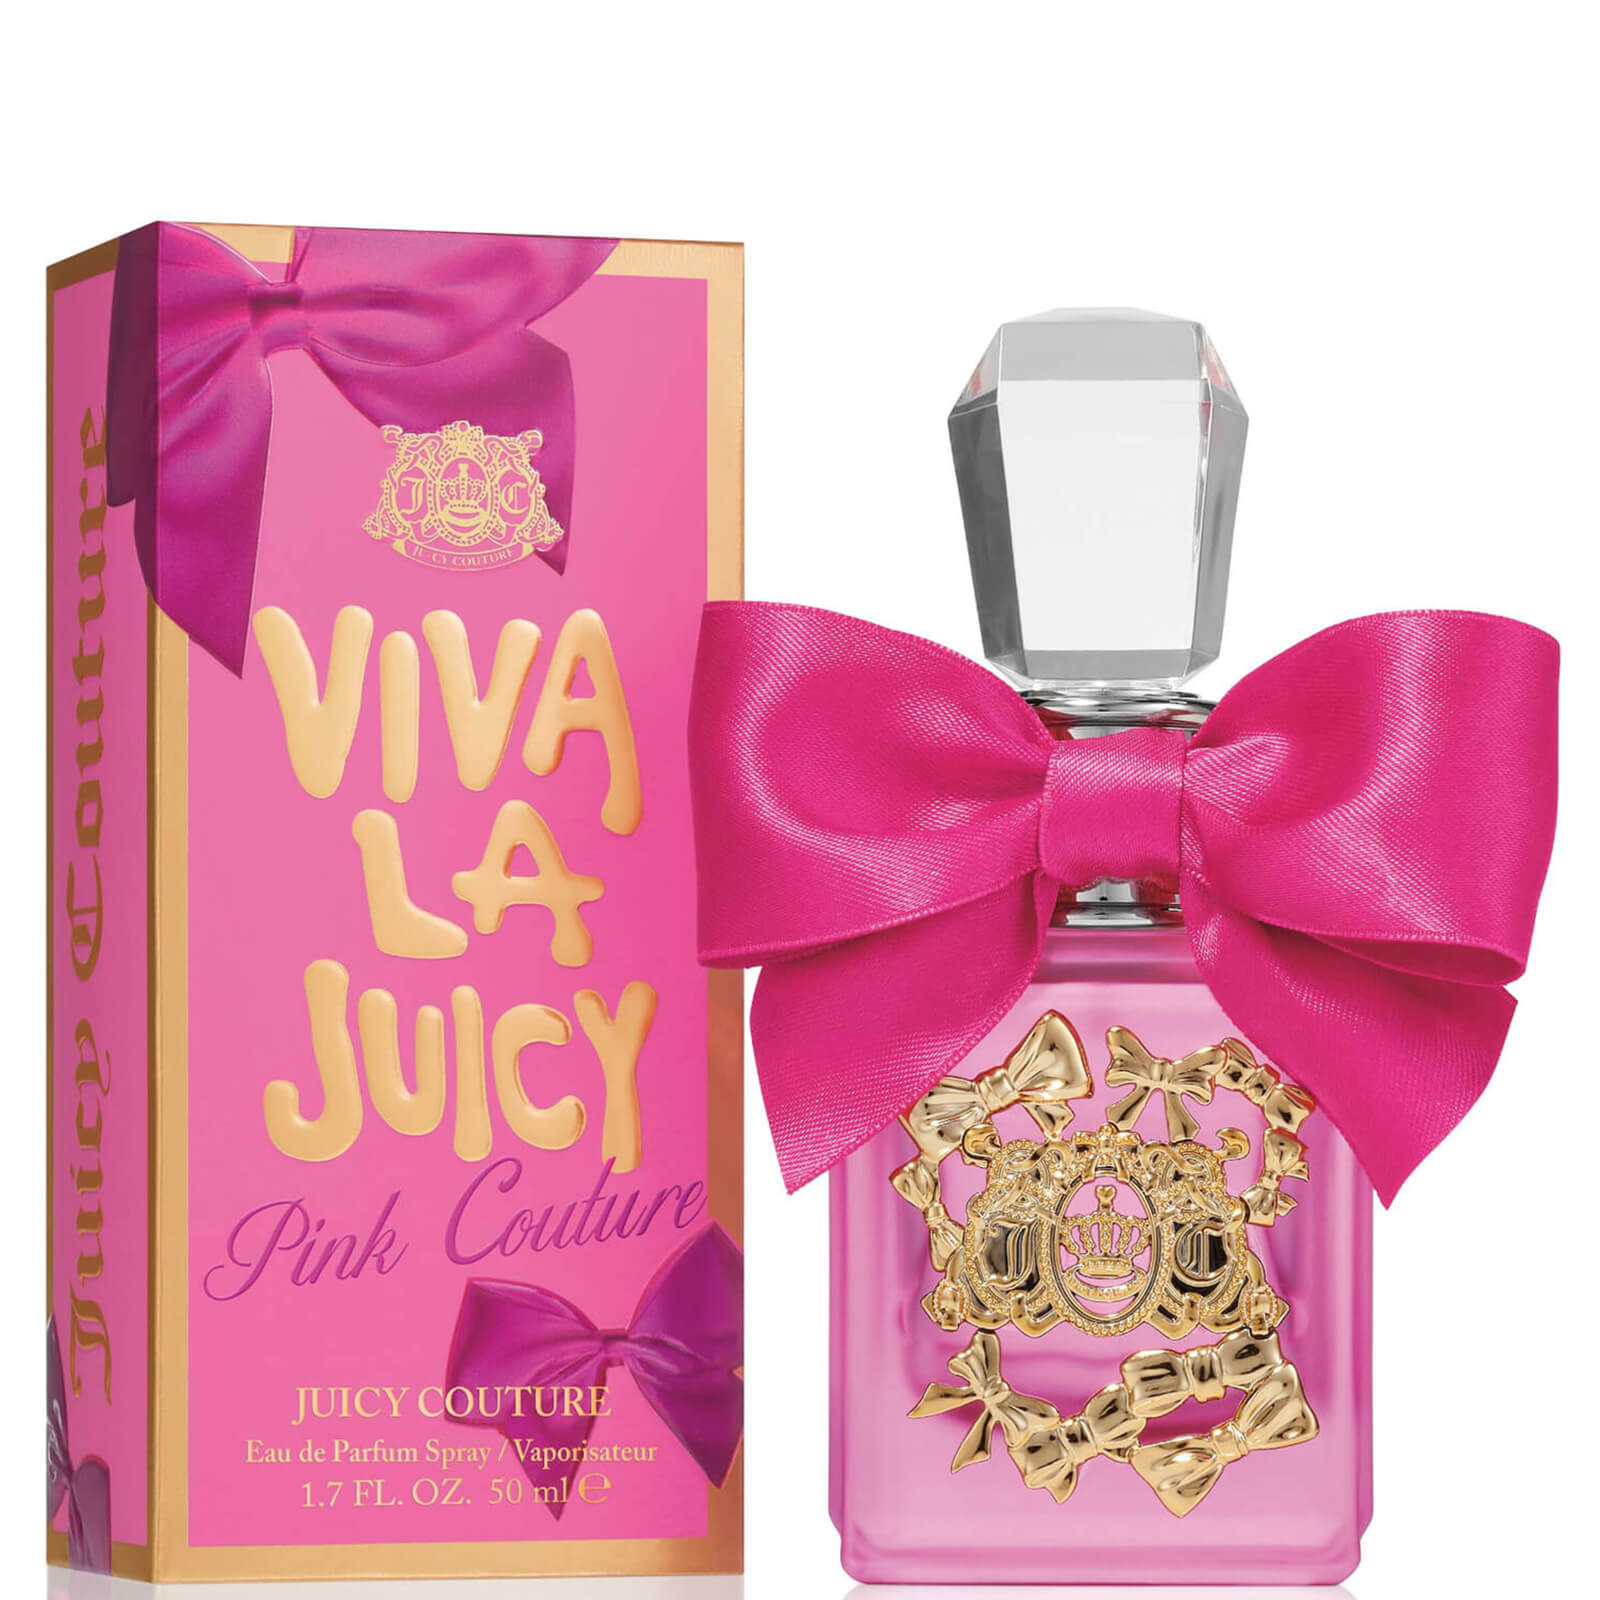 Photos - Women's Fragrance Juicy Couture Viva La Juicy Pink Couture Eau de Parfum Spray - 50ml A01225 